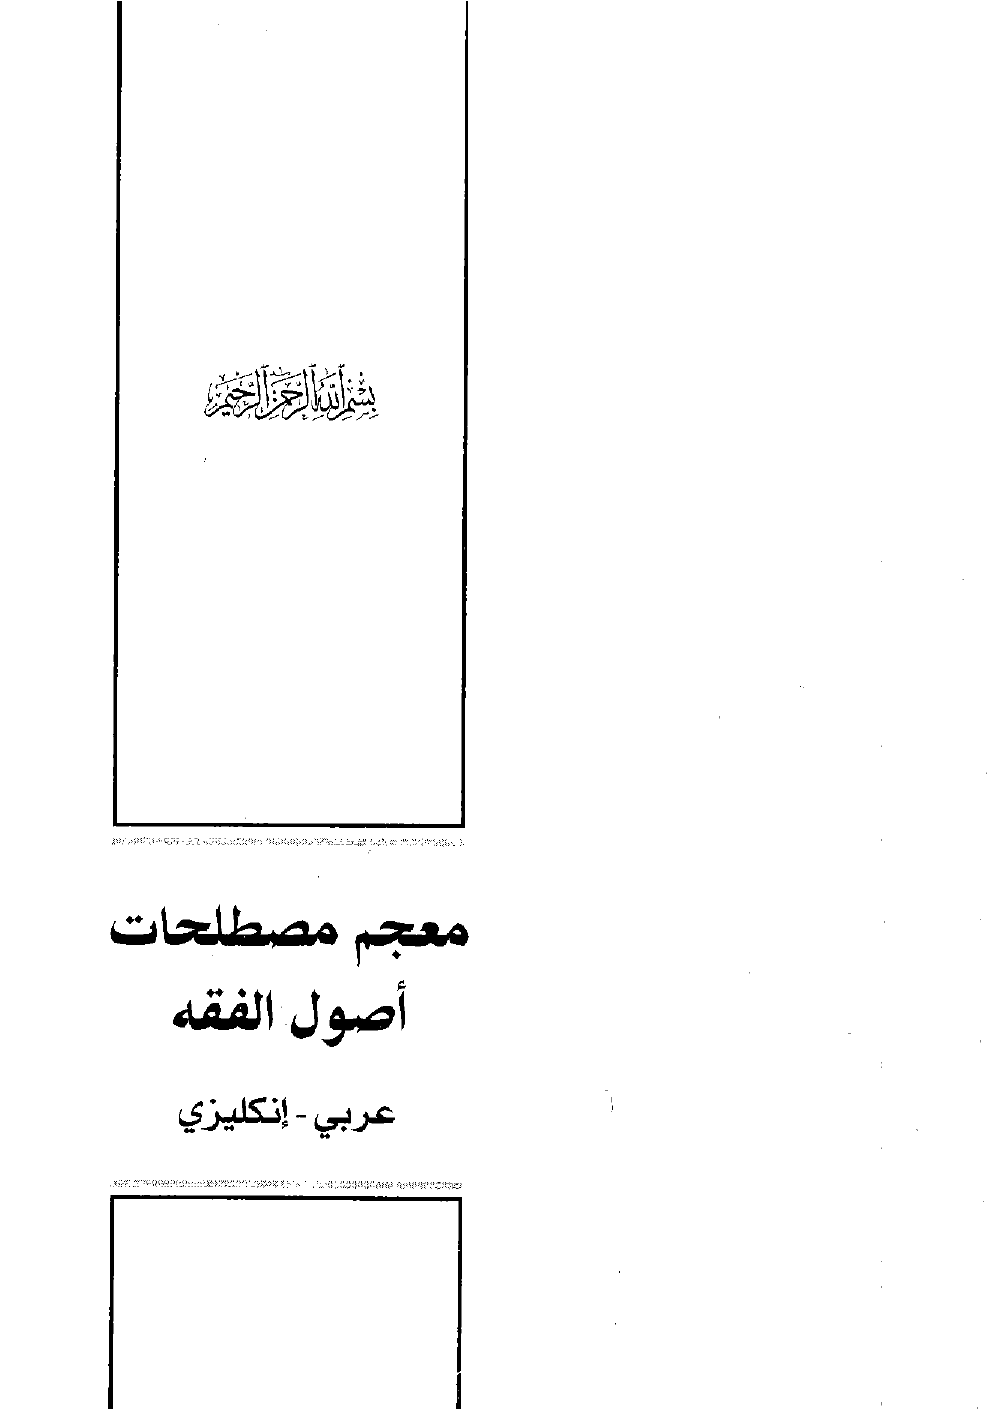 تنزيل وتحميل كتاِب معجم مصطلحات أصول الفقه (عربي – إنكليزي ) – نسخة مصورة pdf برابط مباشر مجاناً 